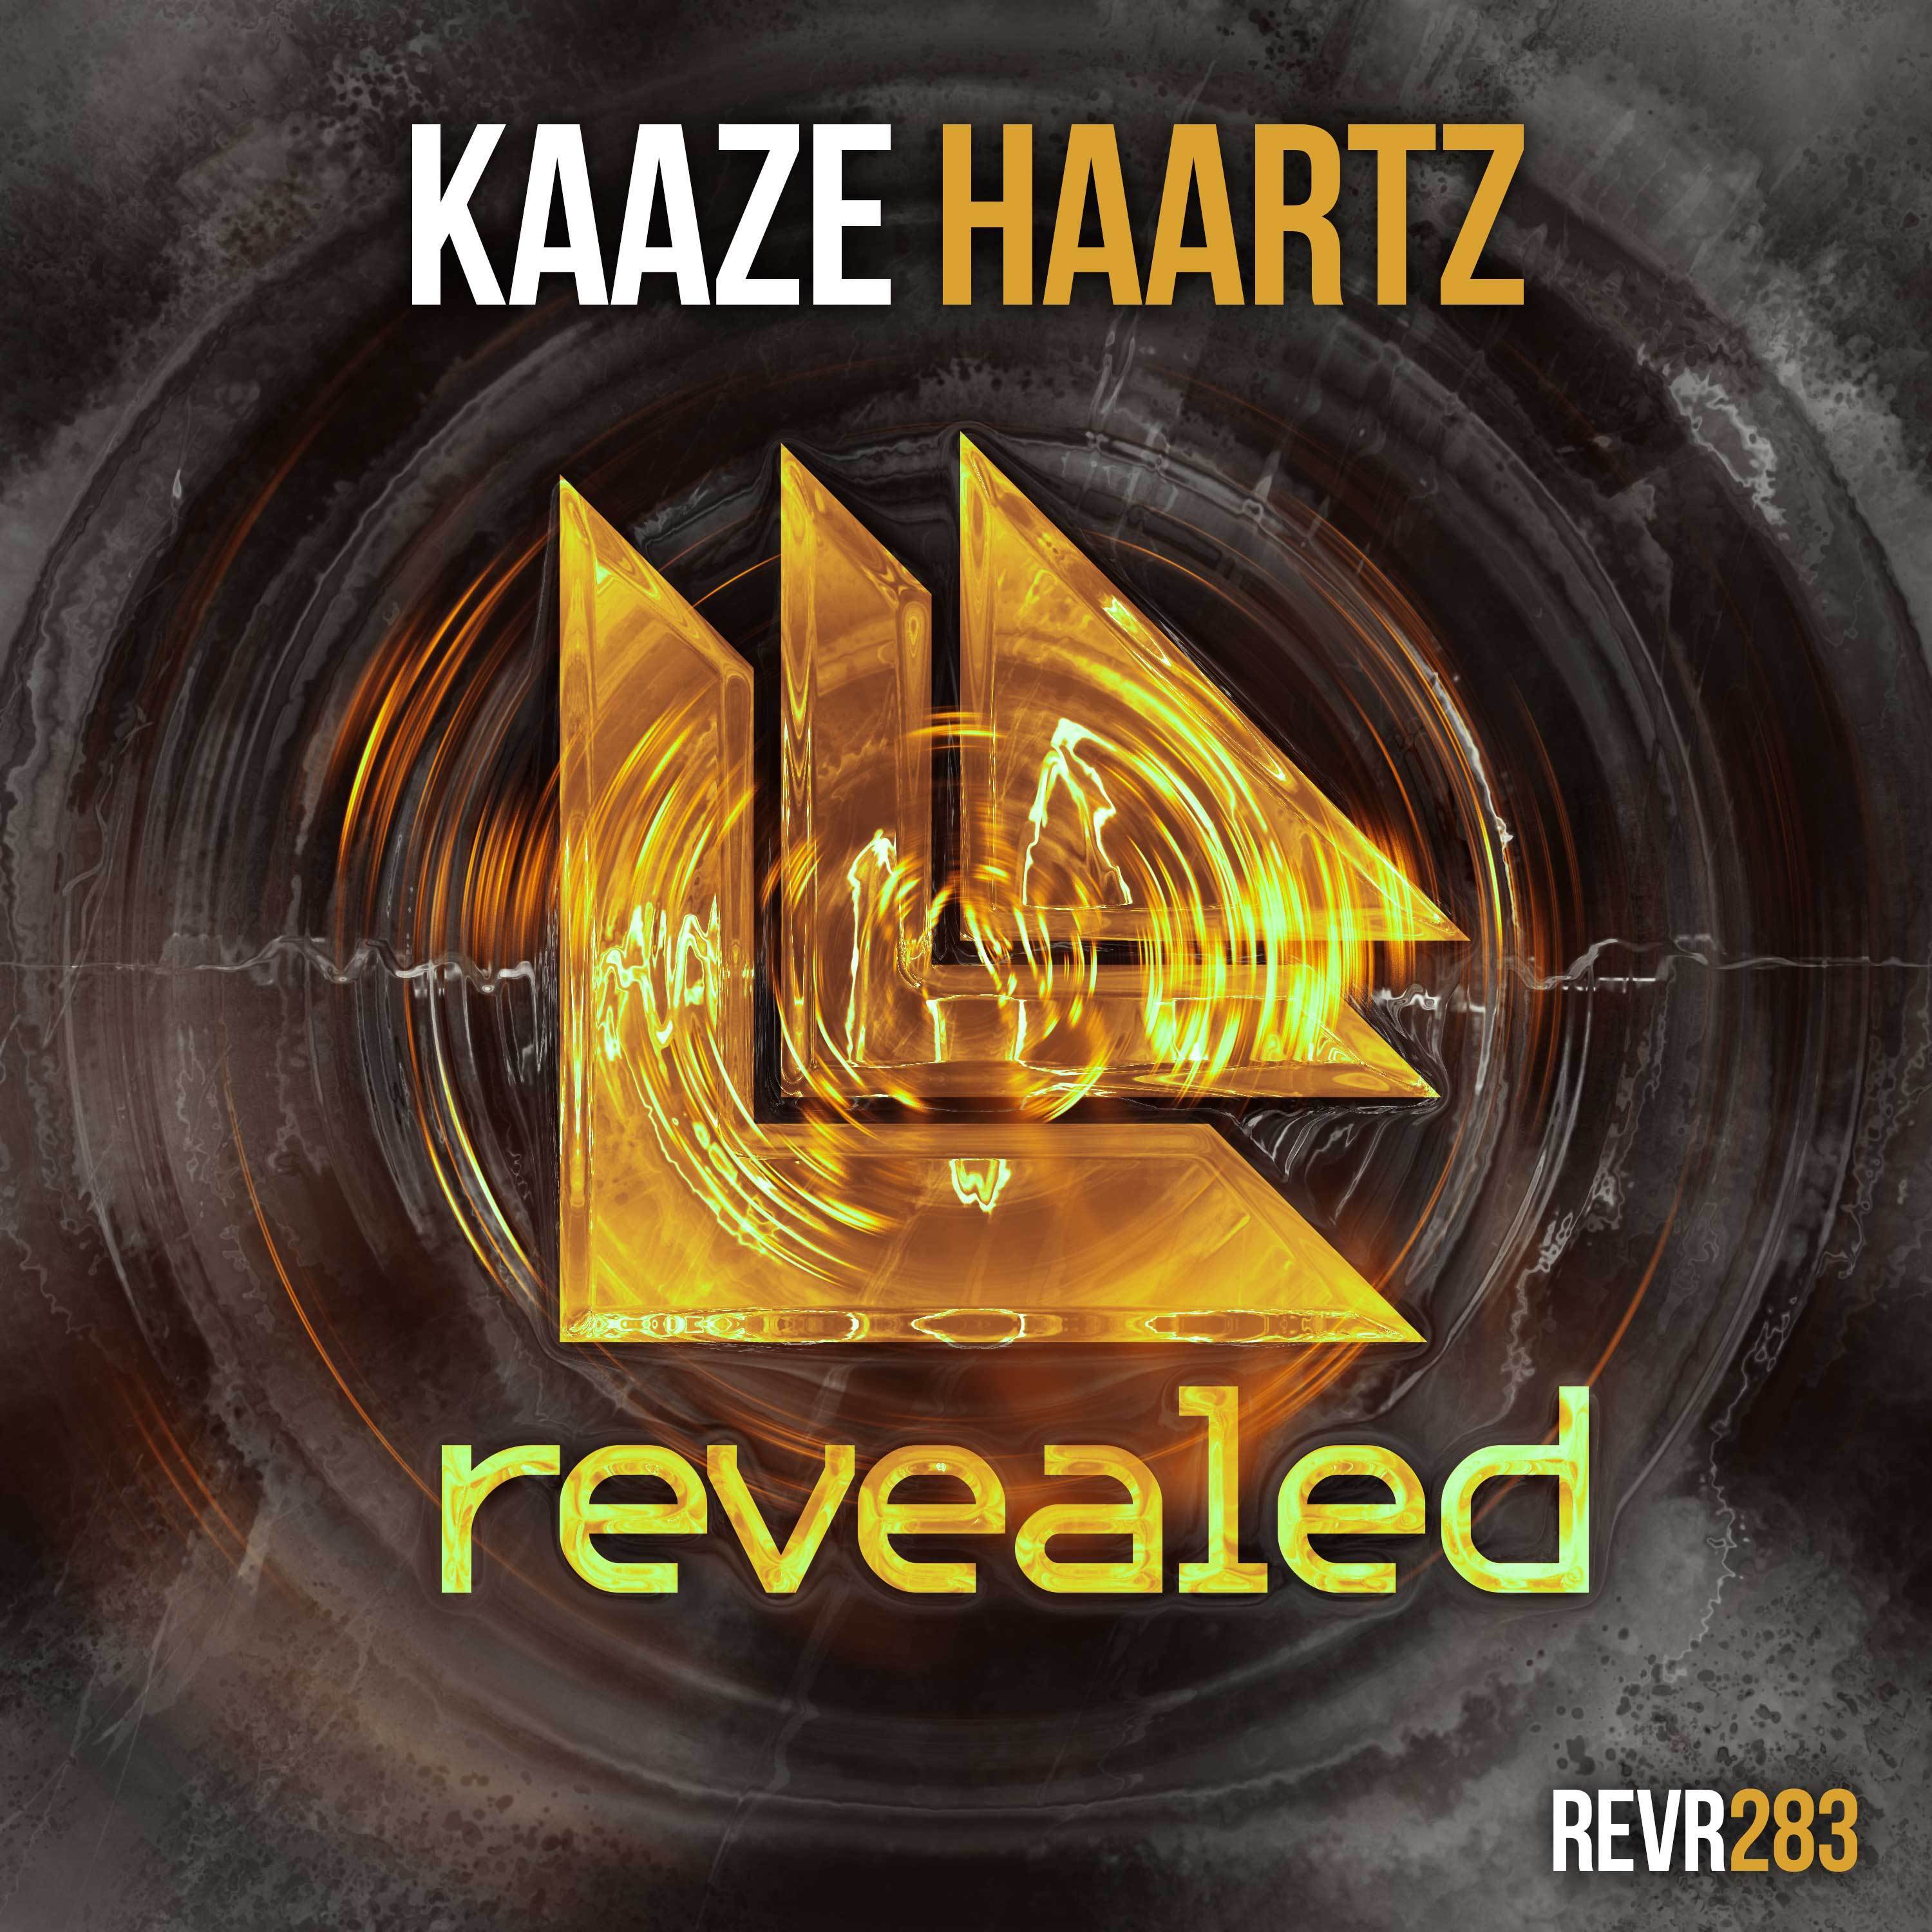 Haartz (Extended Mix)